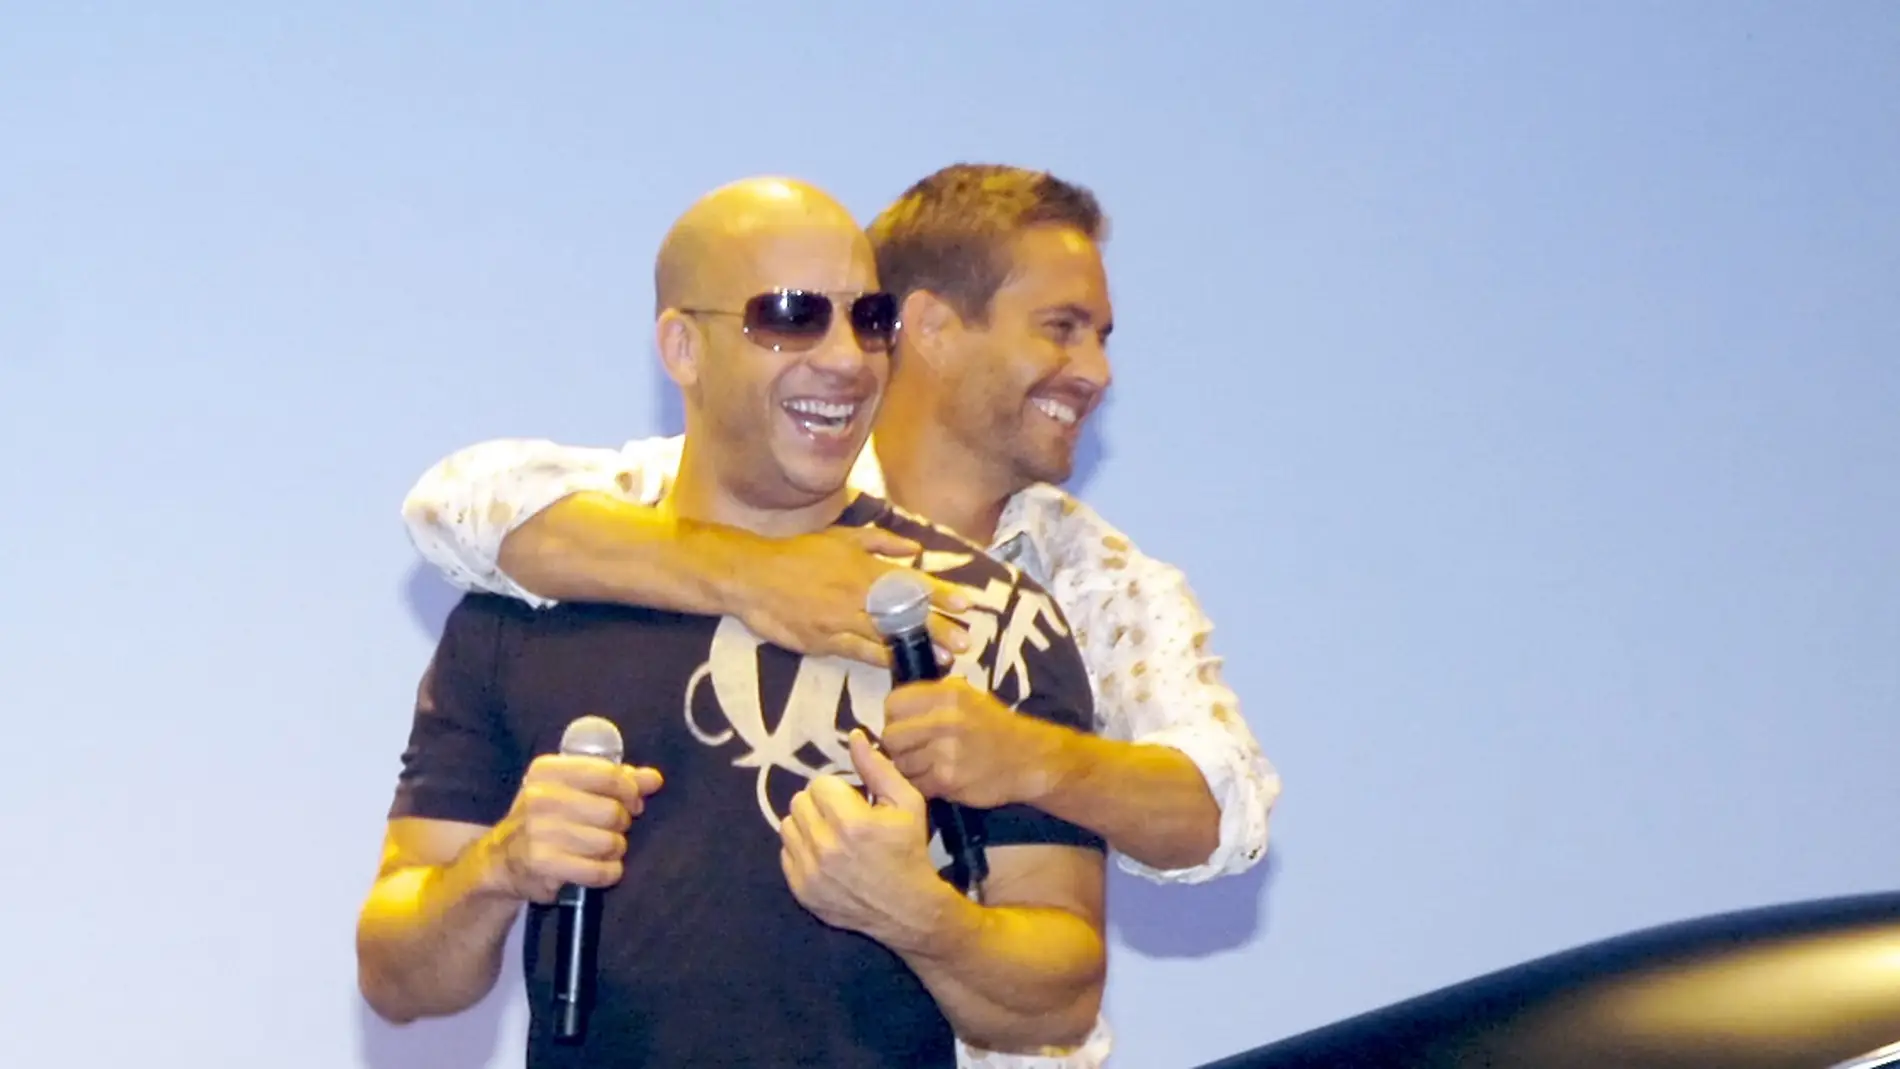 Vin Diesel y Paul Walker